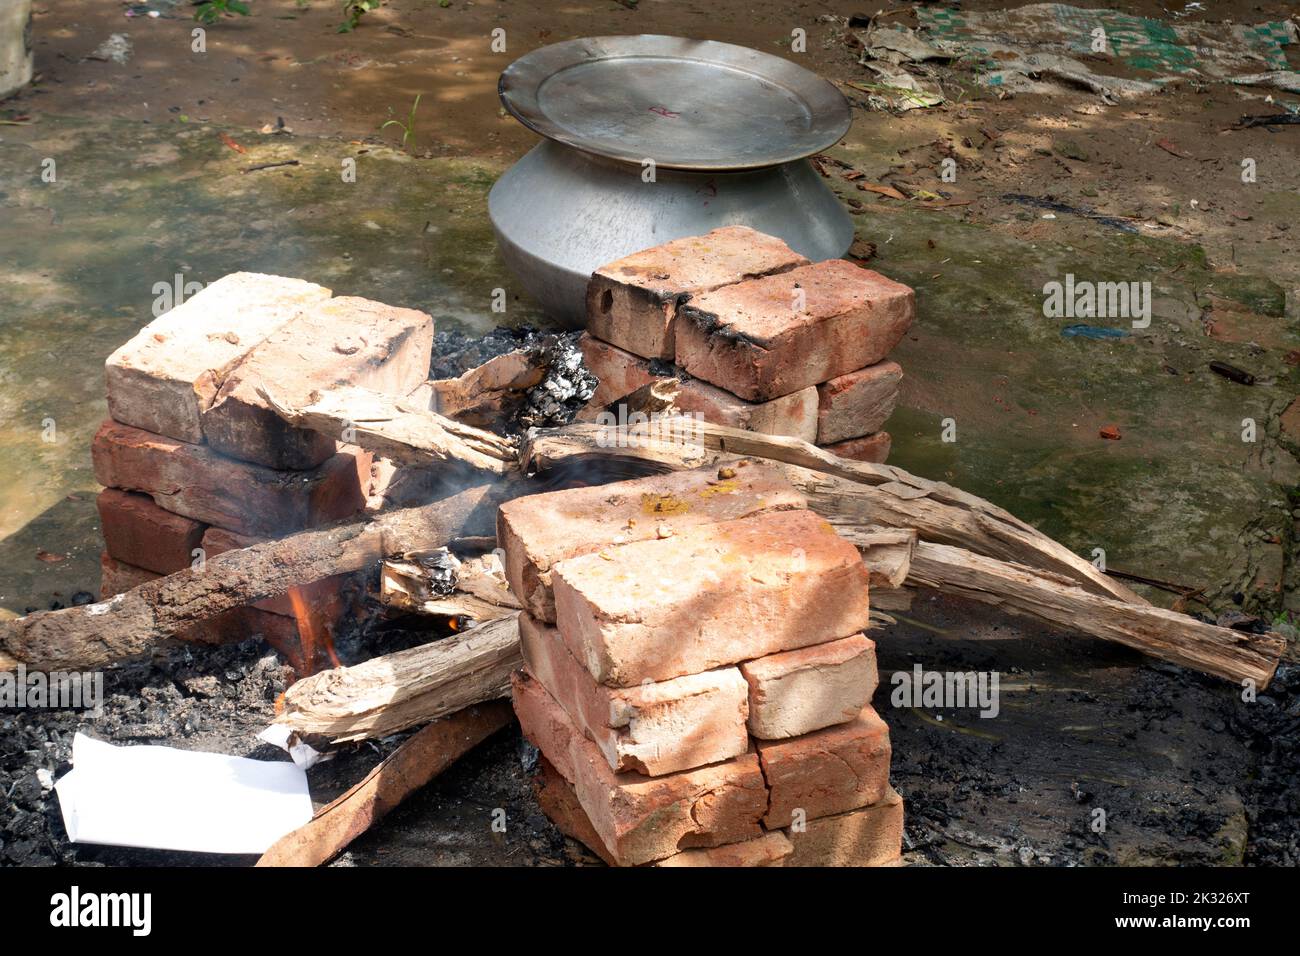 La cuisine biryani dans un village partie sur un four temporaire en brique. Cuisine extérieure pour beaucoup de personnes dans une grande poêle en aluminium au feu de bois. Banque D'Images